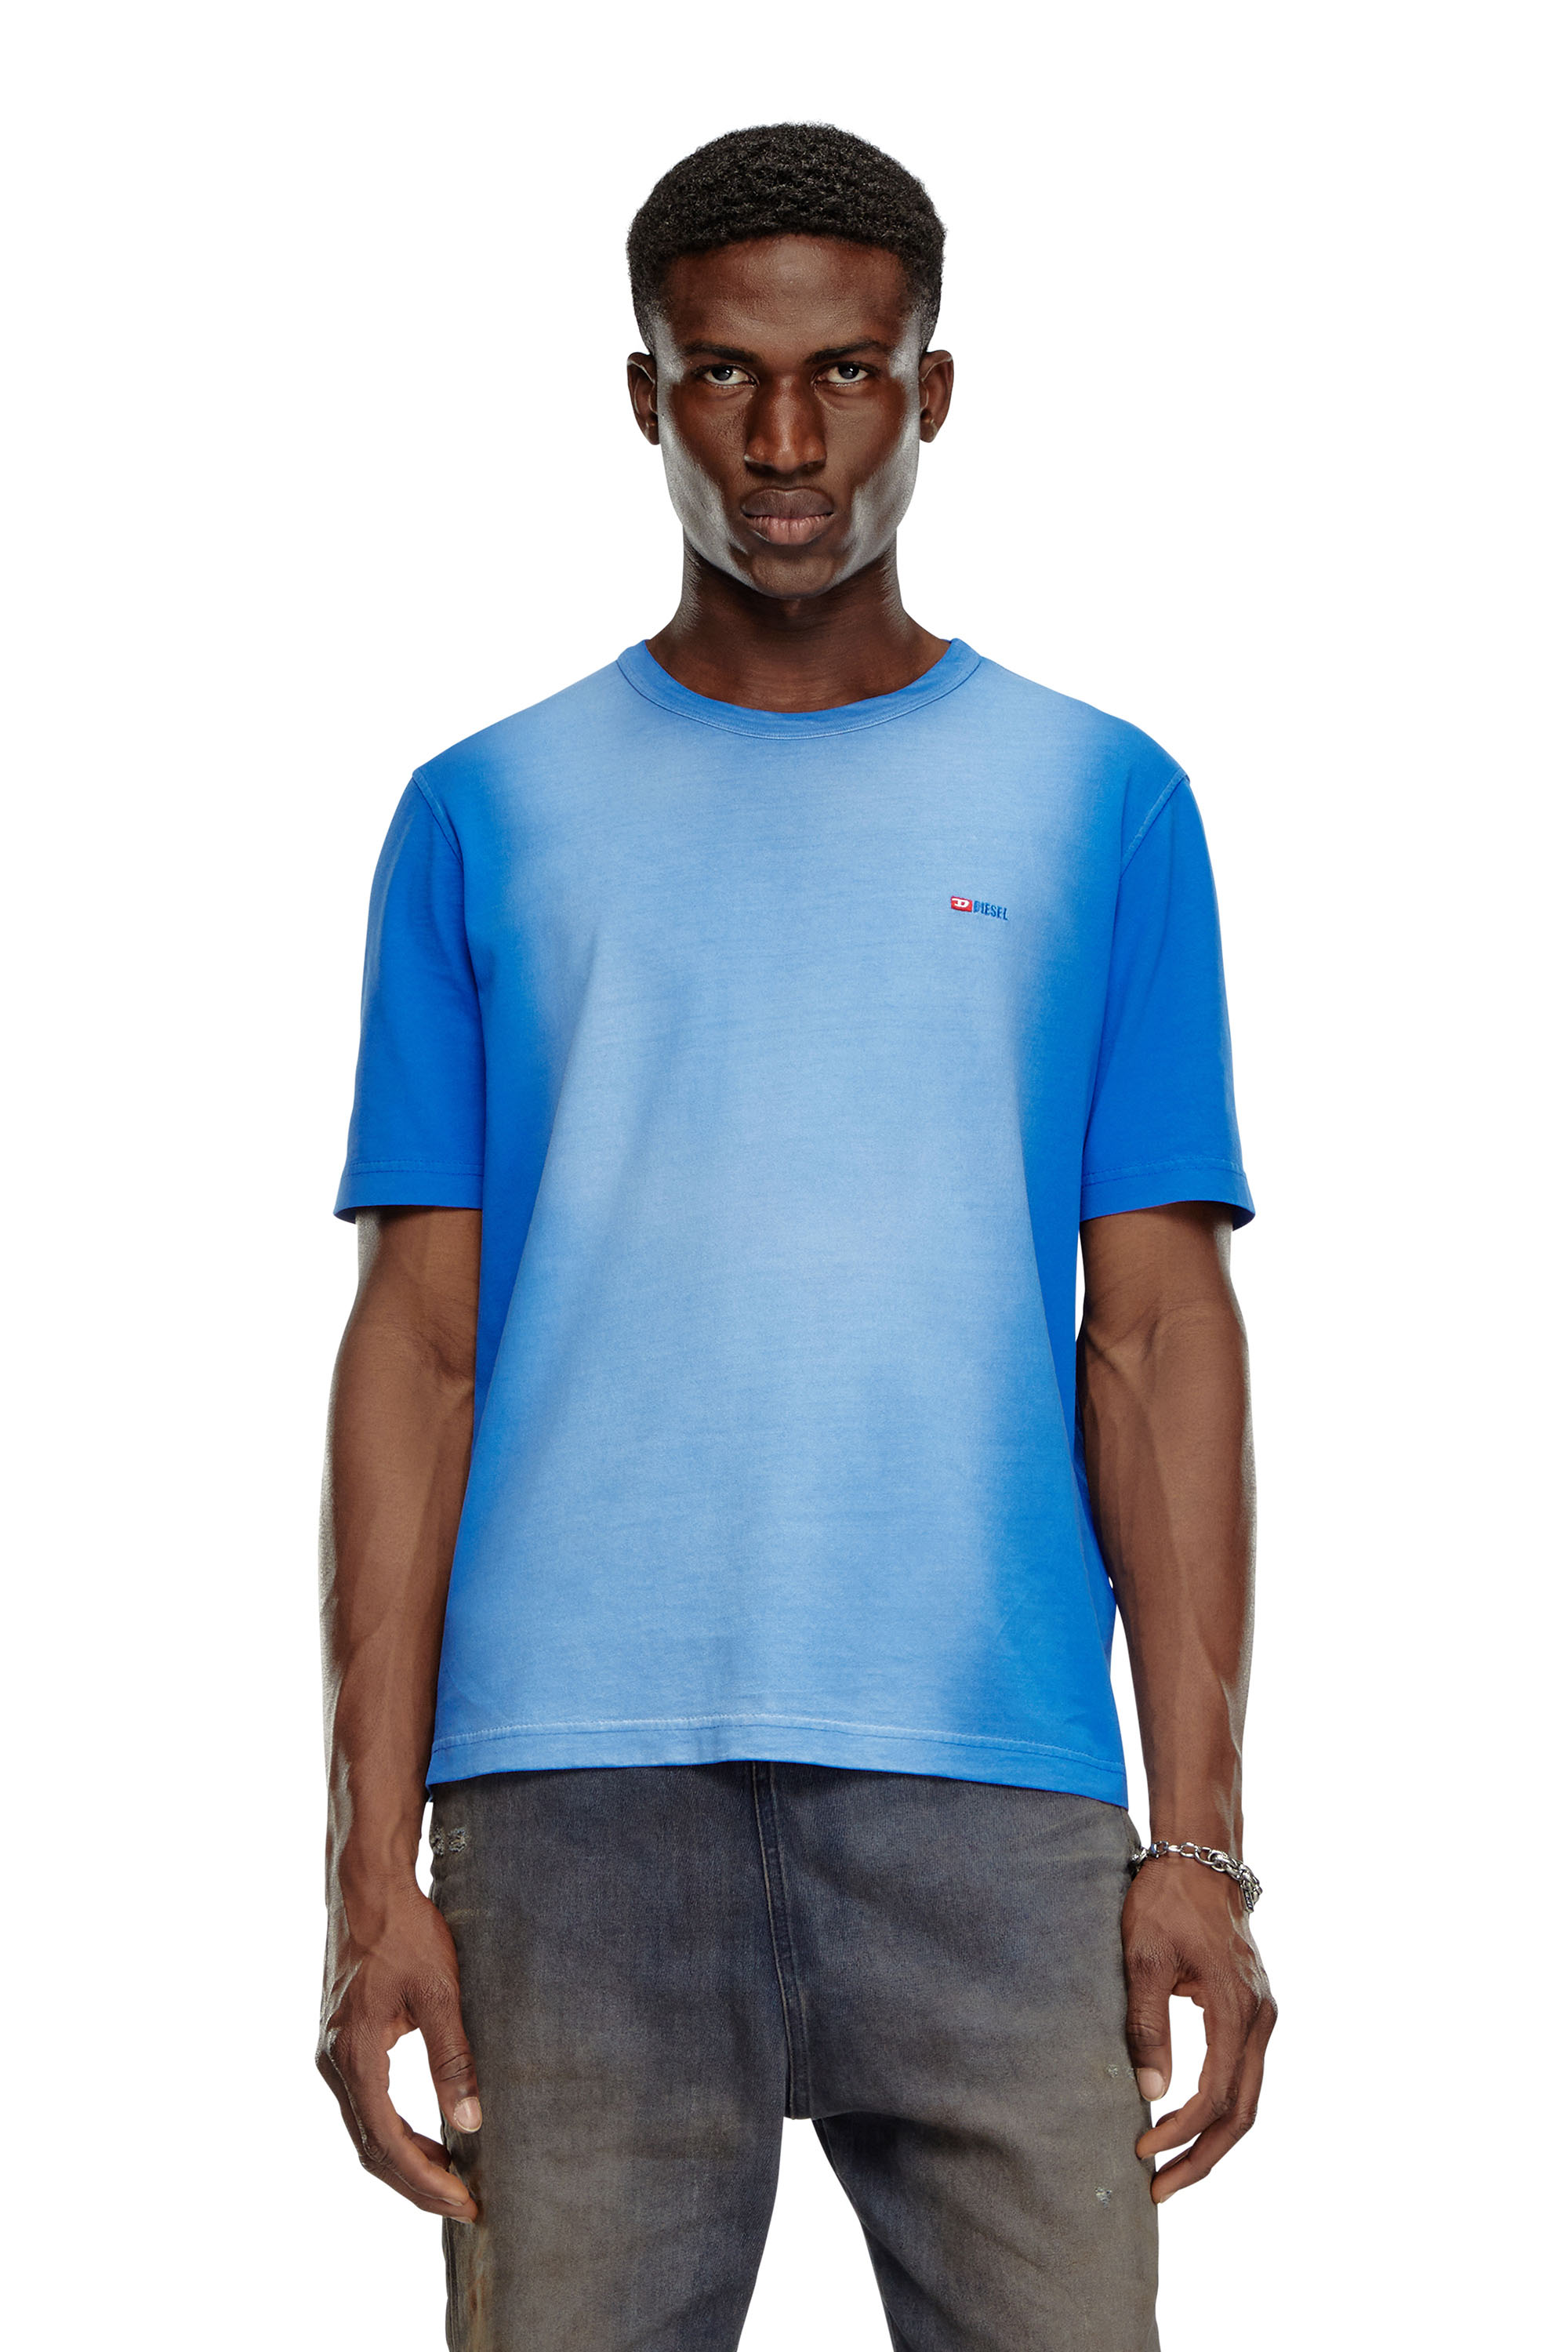 Diesel - T-ADJUST-Q2, Hombre Camiseta en tejido de algodón rociado in Azul marino - Image 1